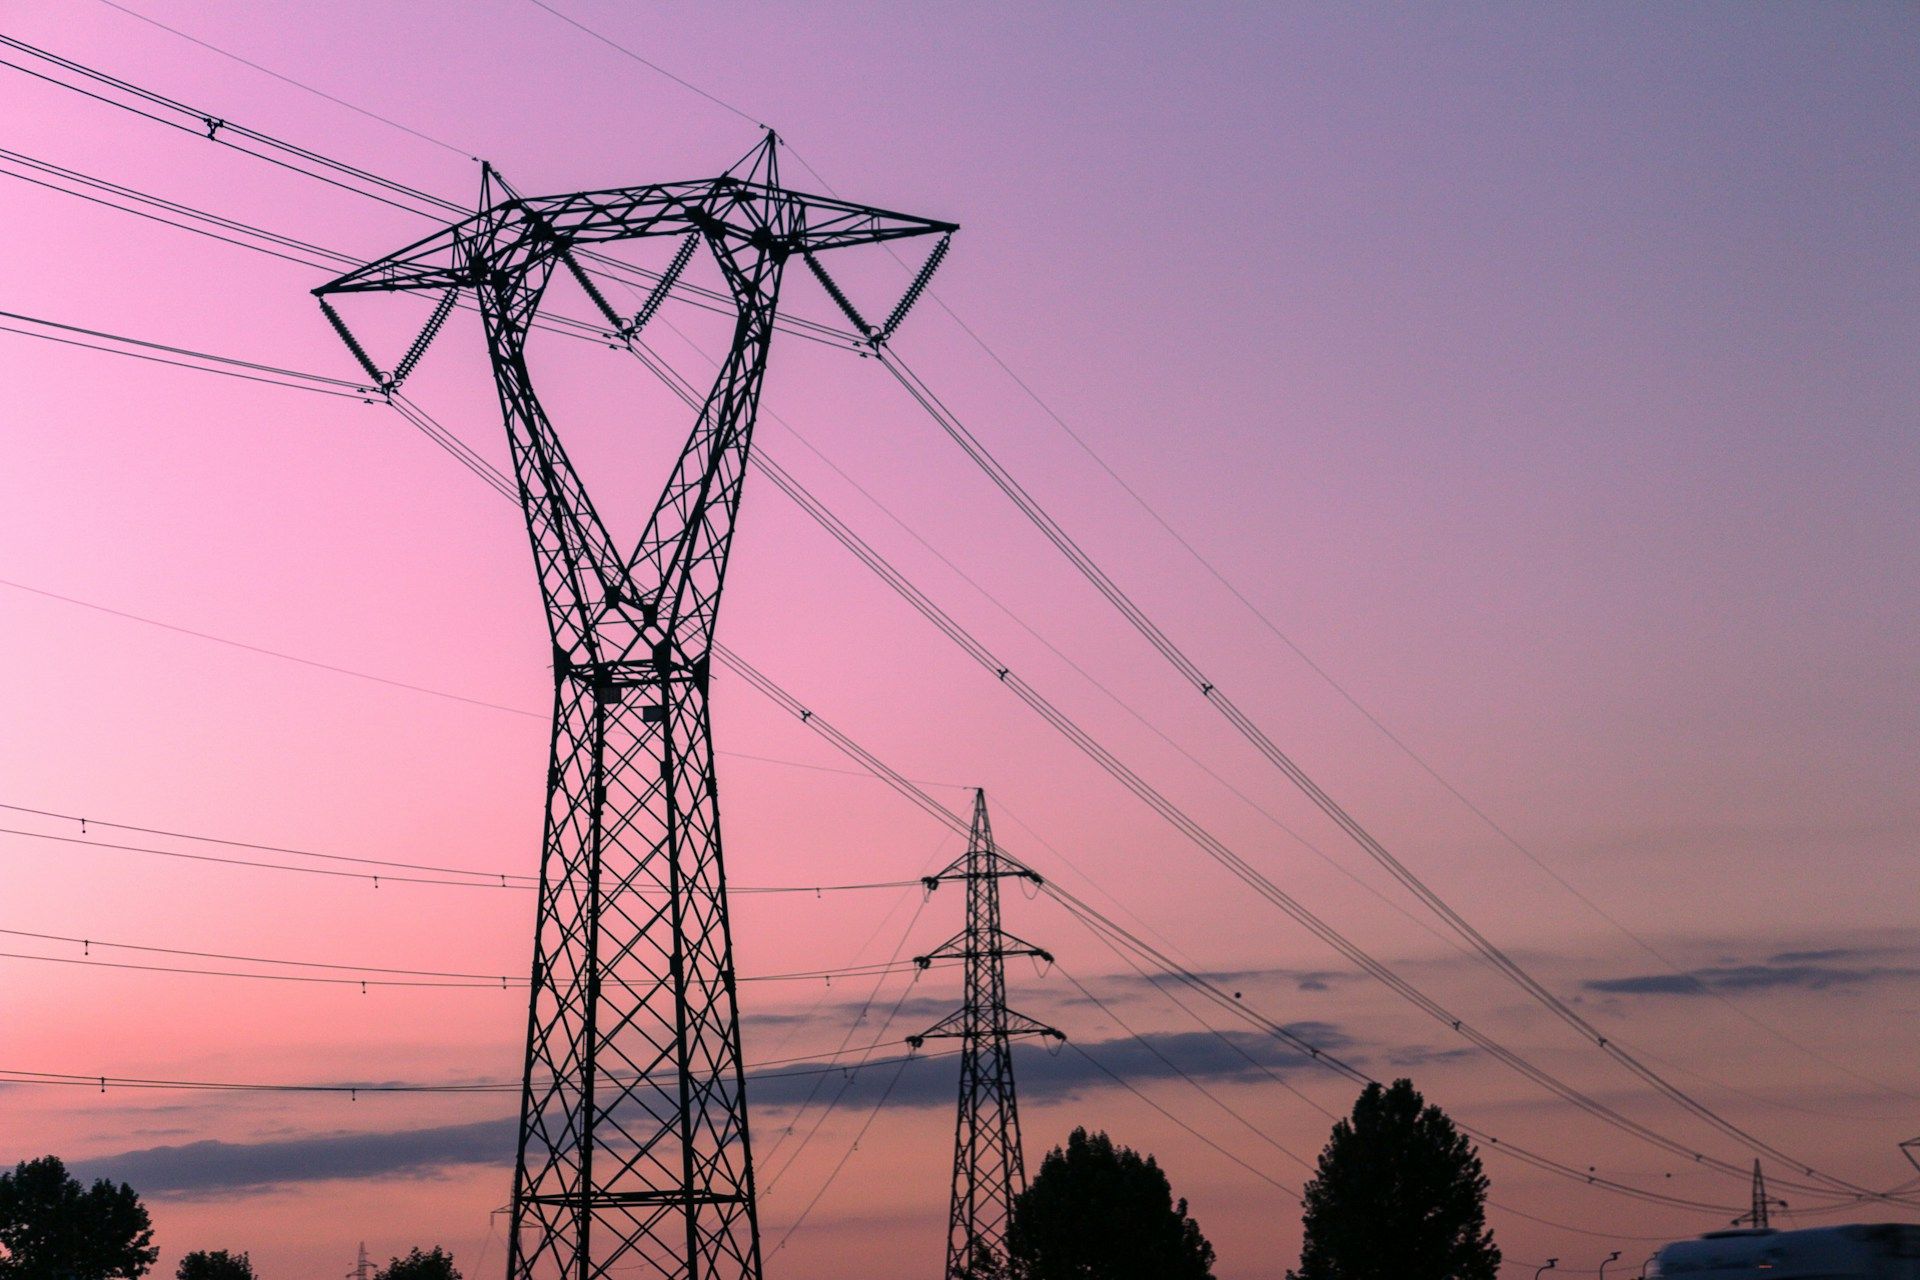  Польща готова постачати електроенергію Україні зі своїх ТЕС